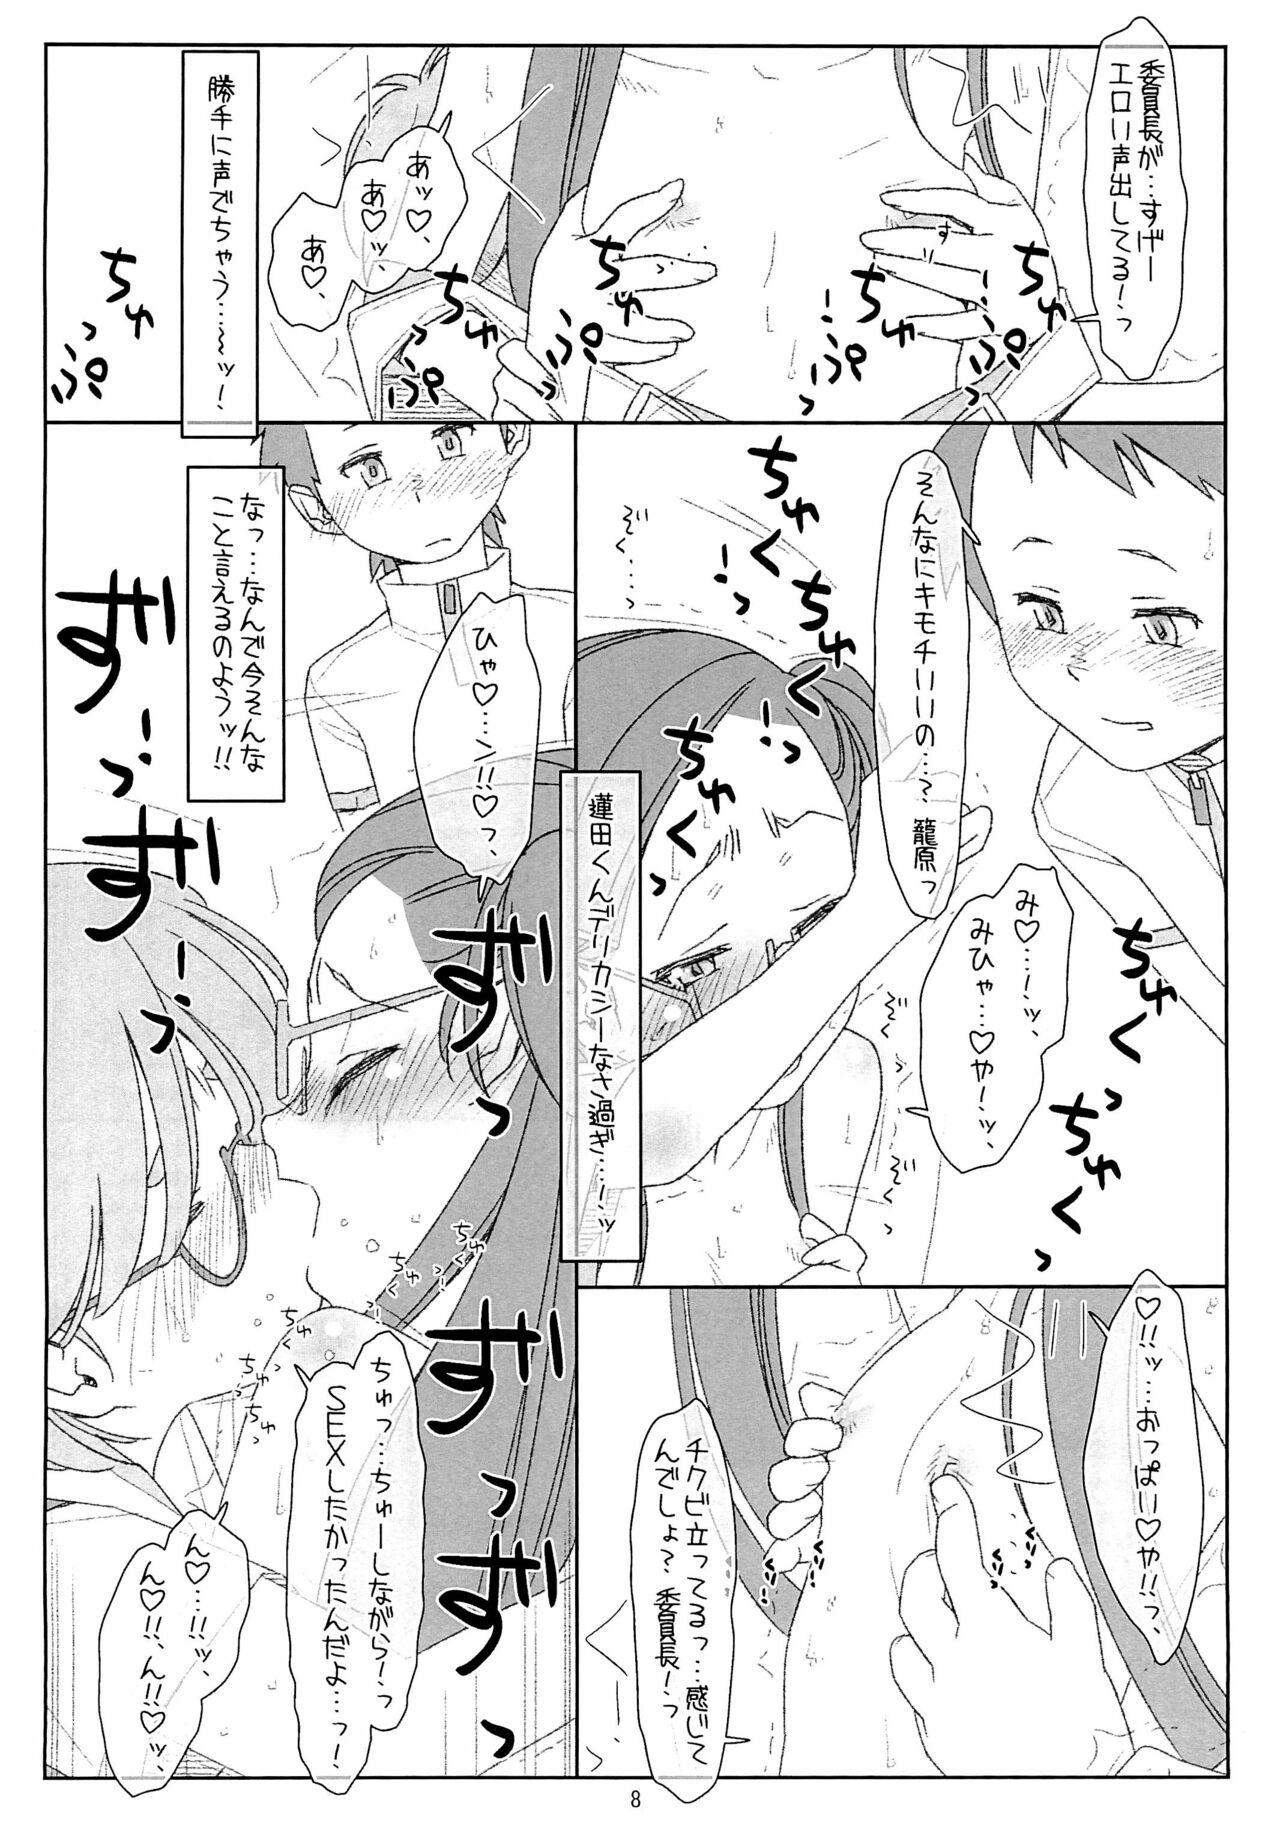 Leggings "Bokutachi no Super App" 4 preview ver.2 - Original Family - Page 8